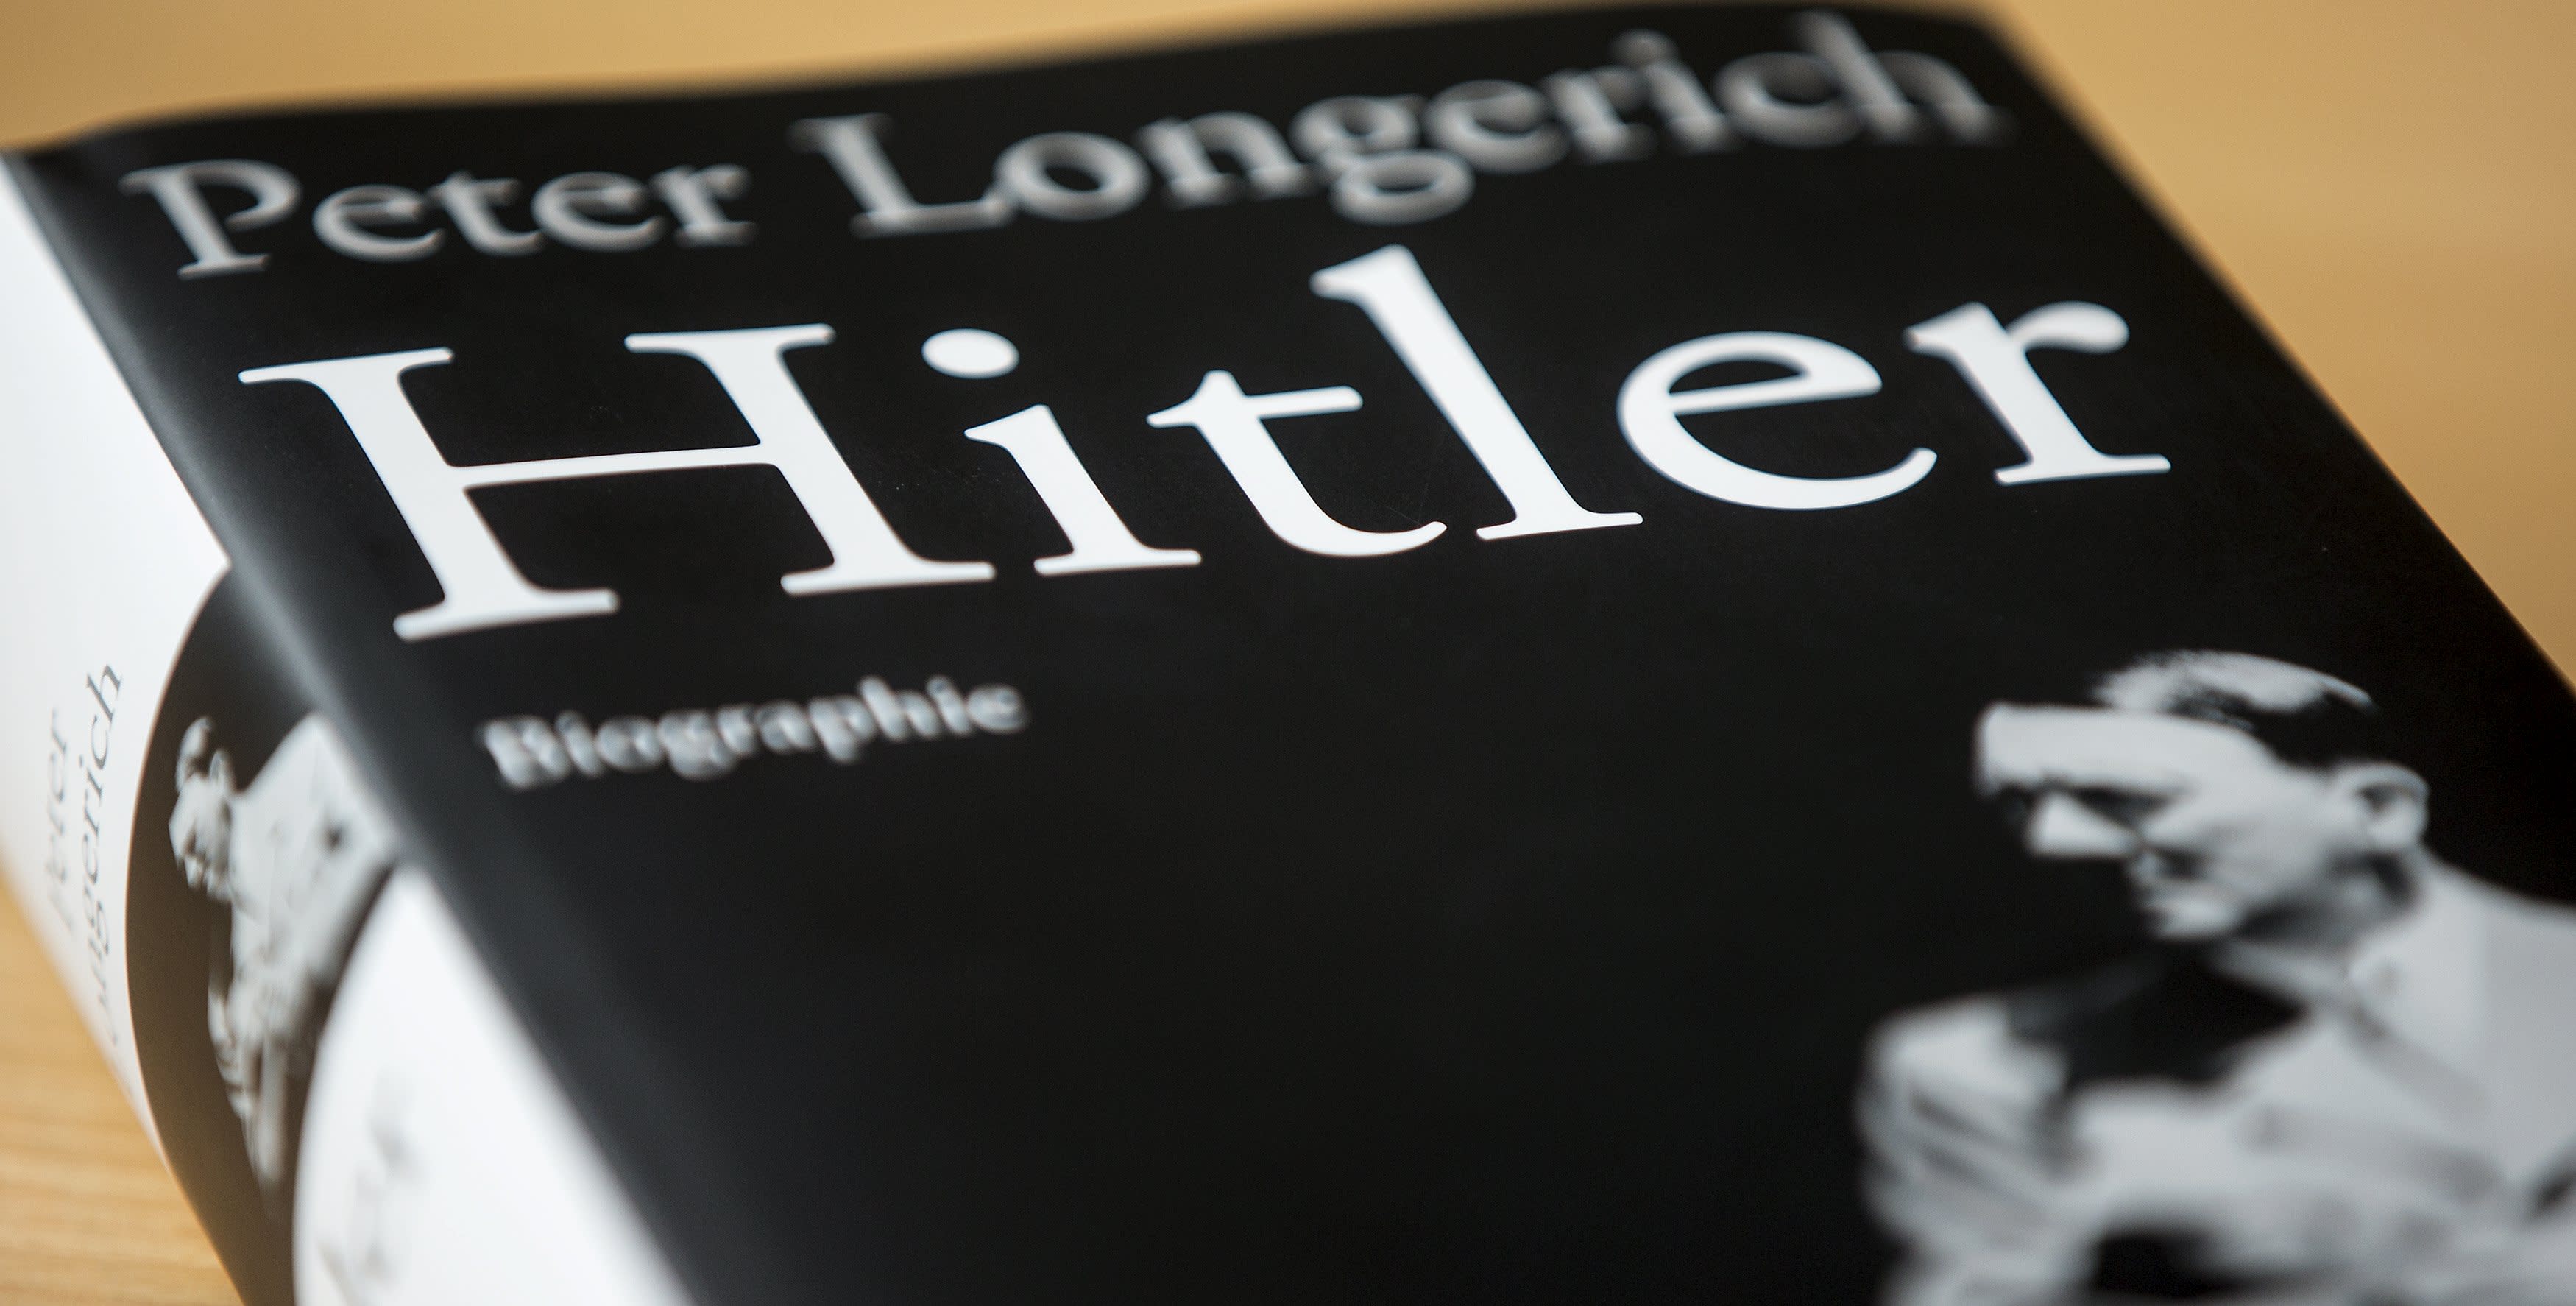 longerich hitler a biography